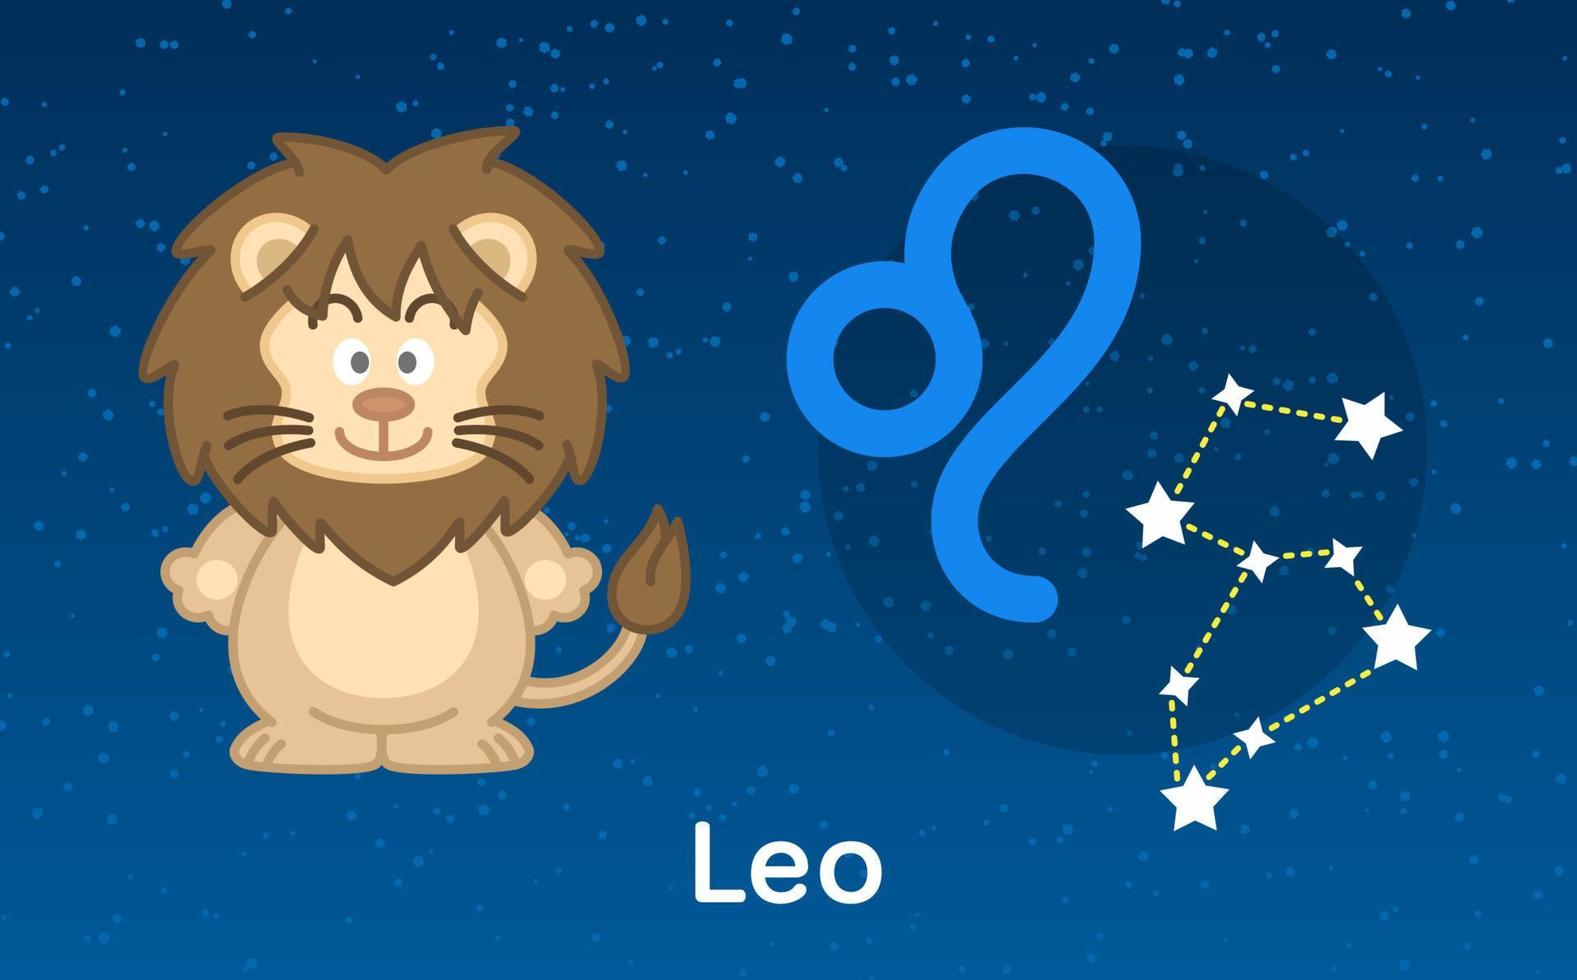 söt tecknad astrologi av leo zodiaken med konstellationer tecken. vektor illustration på stjärnorna himmel bakgrund